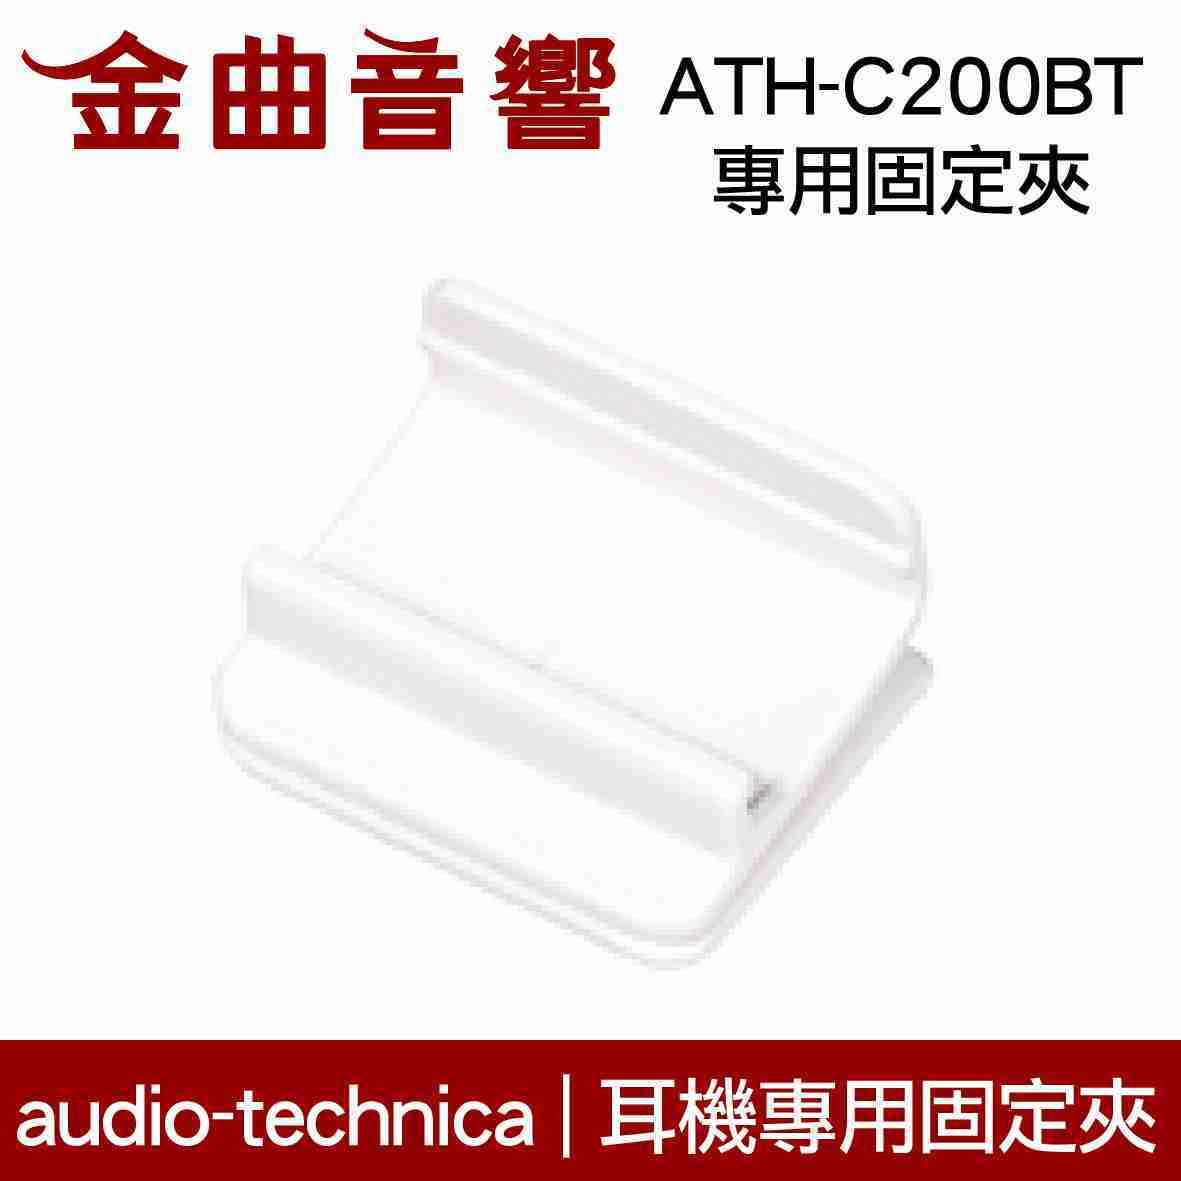 鐵三角 固定夾 適用 ATH-C200BT 耳機 專用夾 | 金曲音響